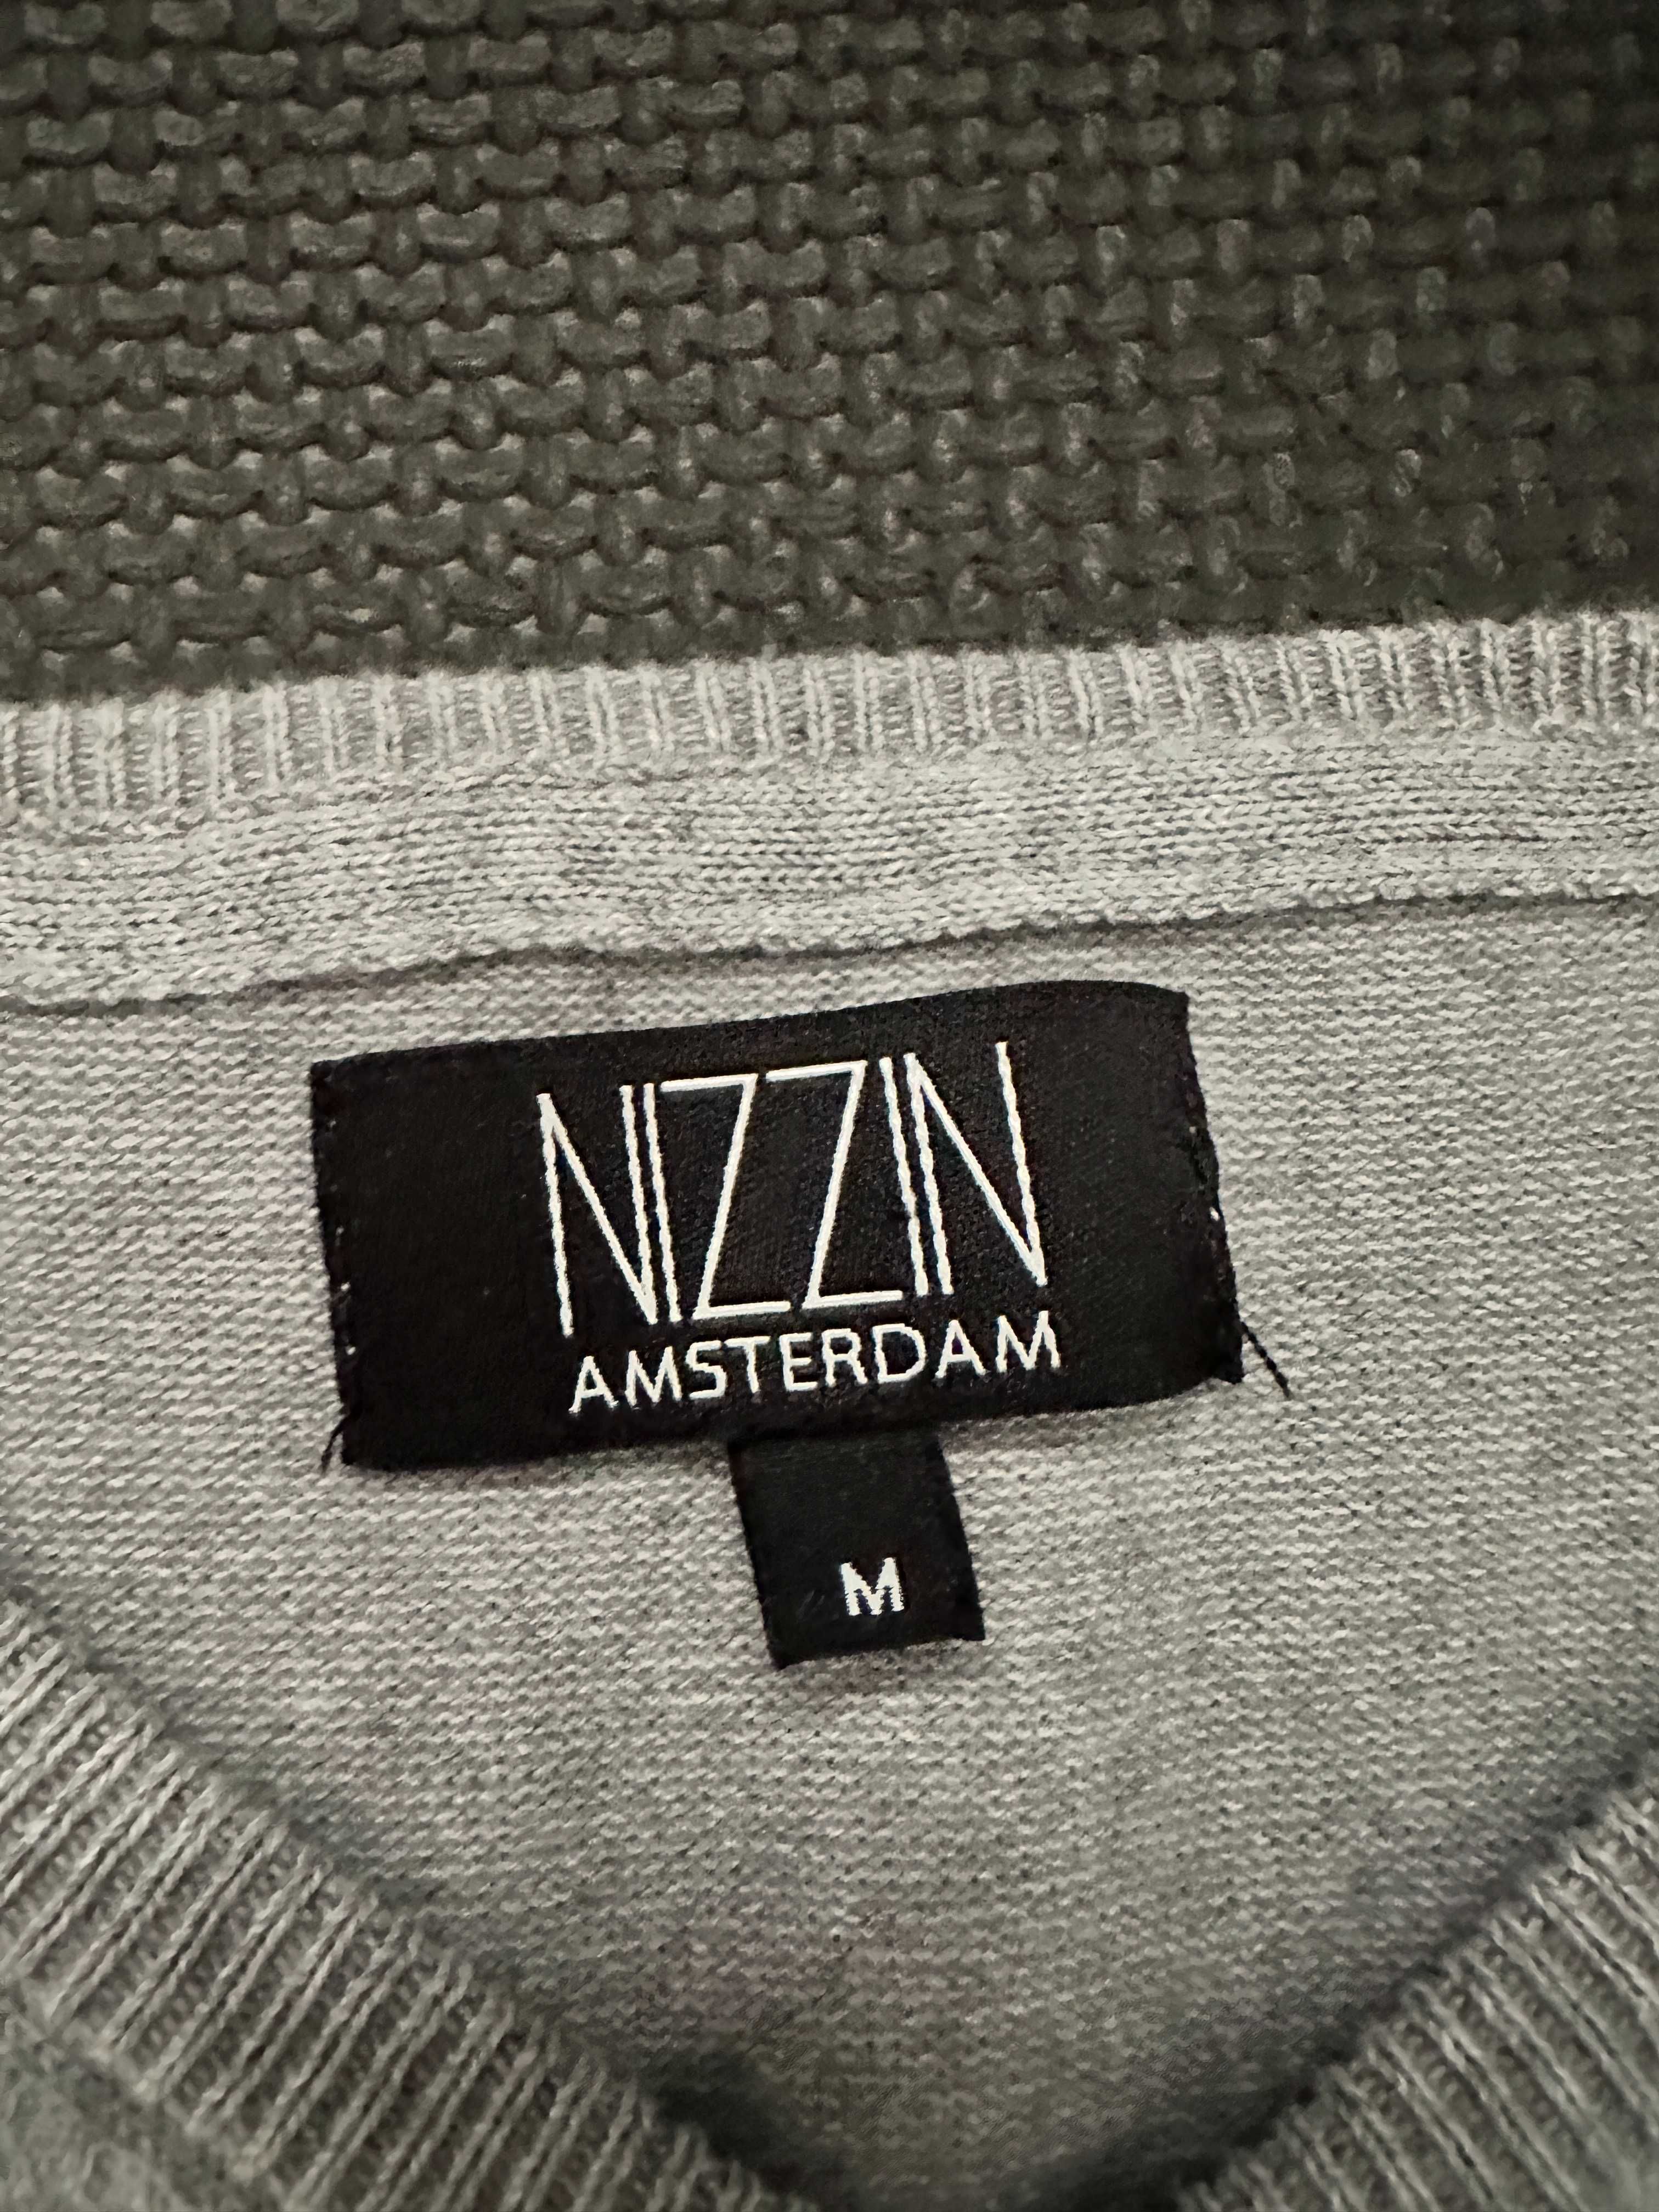 Szary sweter męski V-neck Nizzin Amsterdam rozm. M